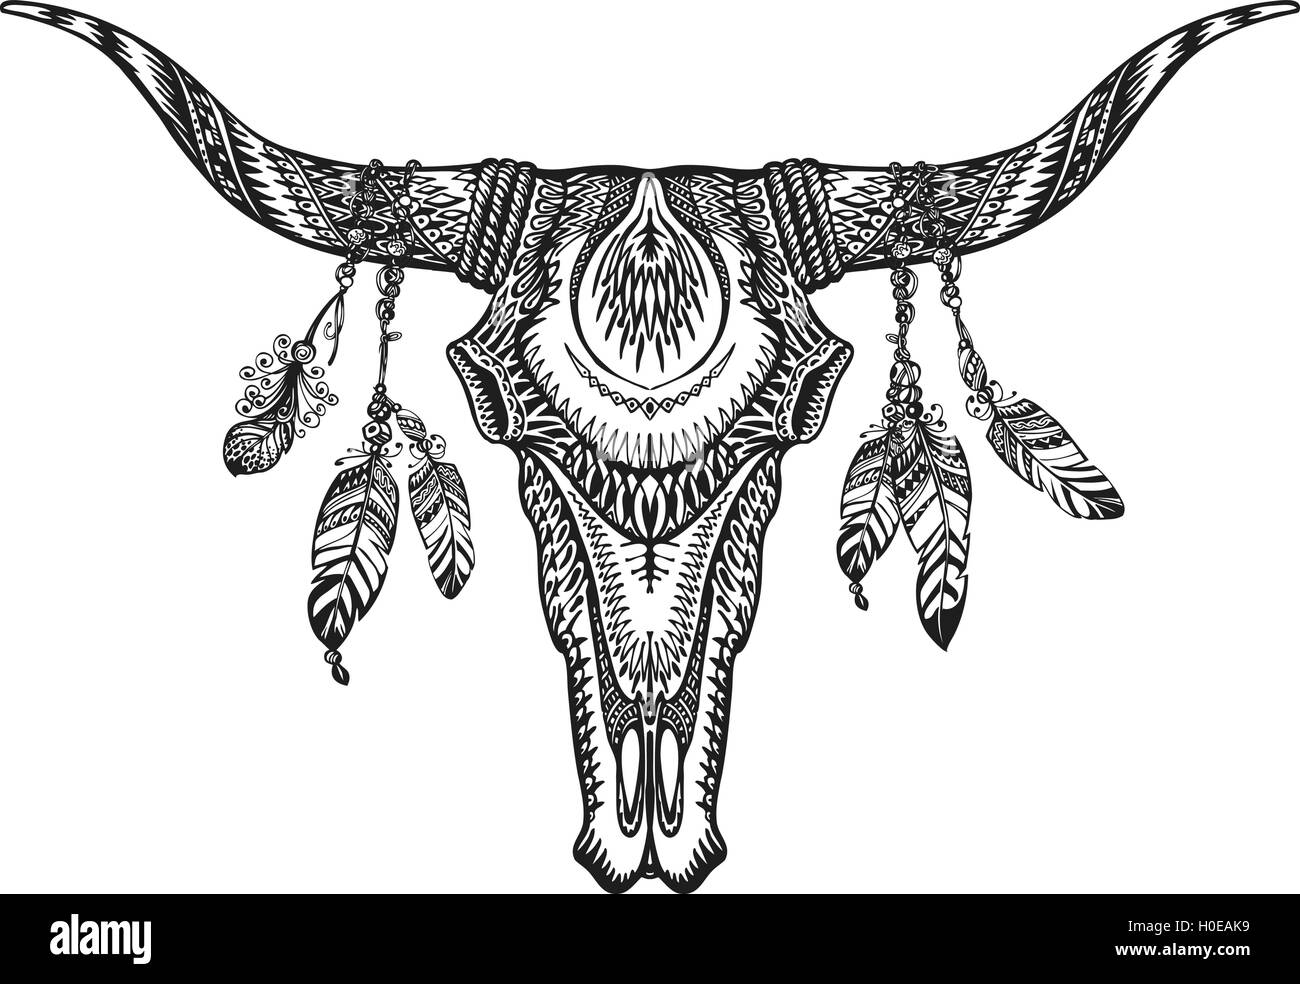 Stammes-tierischen Schädel Vektorgrafik mit ethnischen Ornamente Stock Vektor